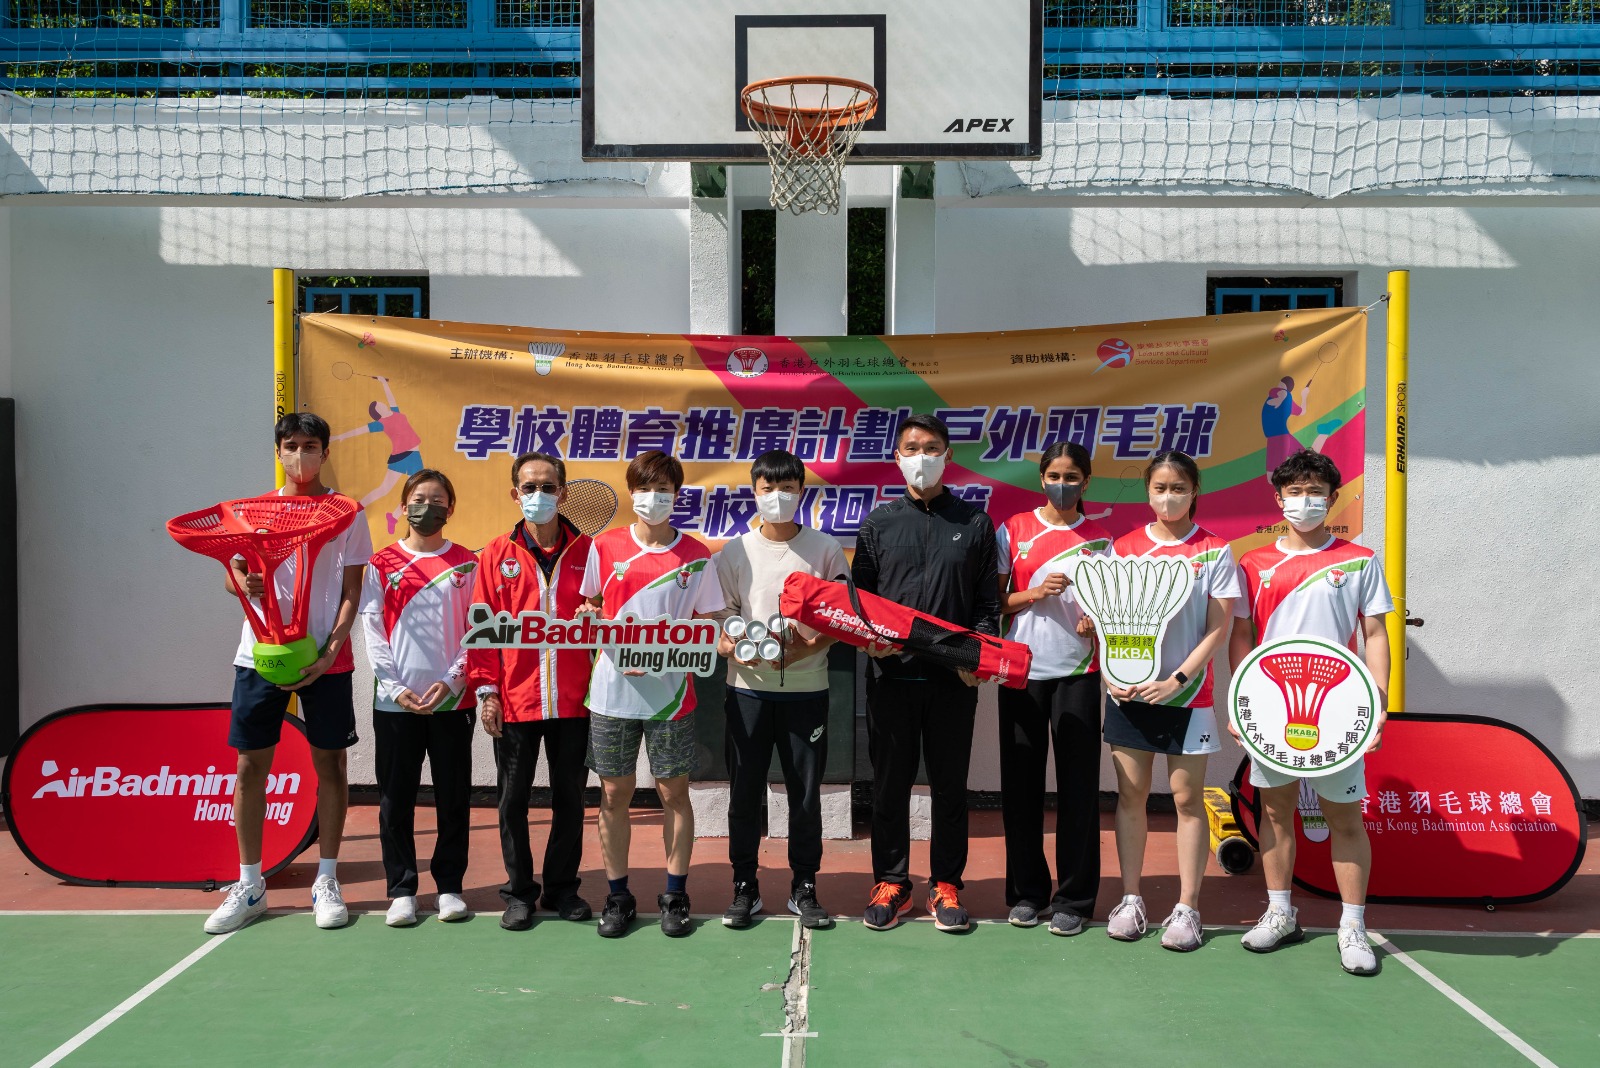 香港羽毛球總會向參與學校贈送戶外羽毛球基本裝備